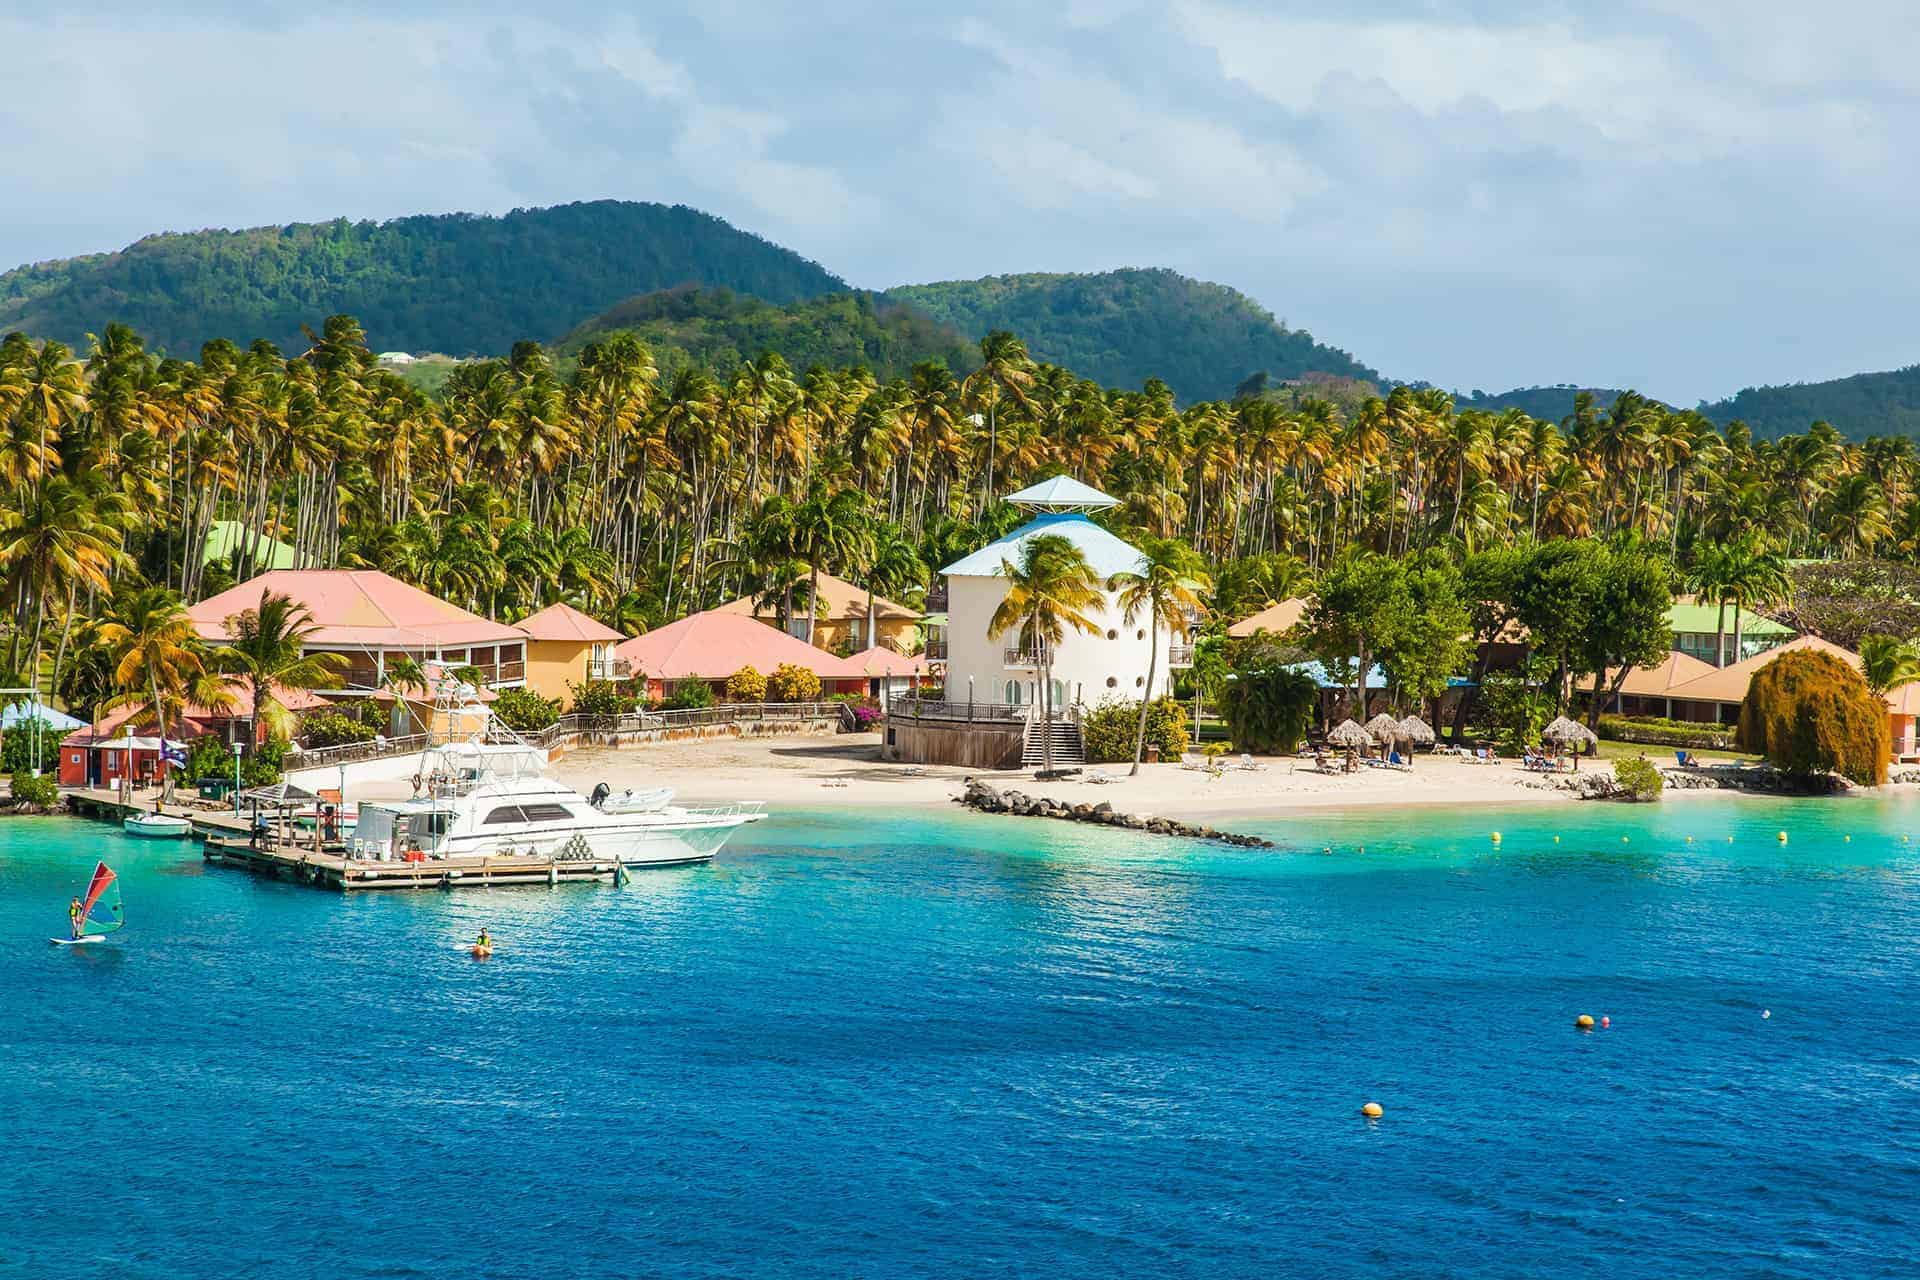 Les 10 Meilleures Images De Martinique En 2020 Martinique Images